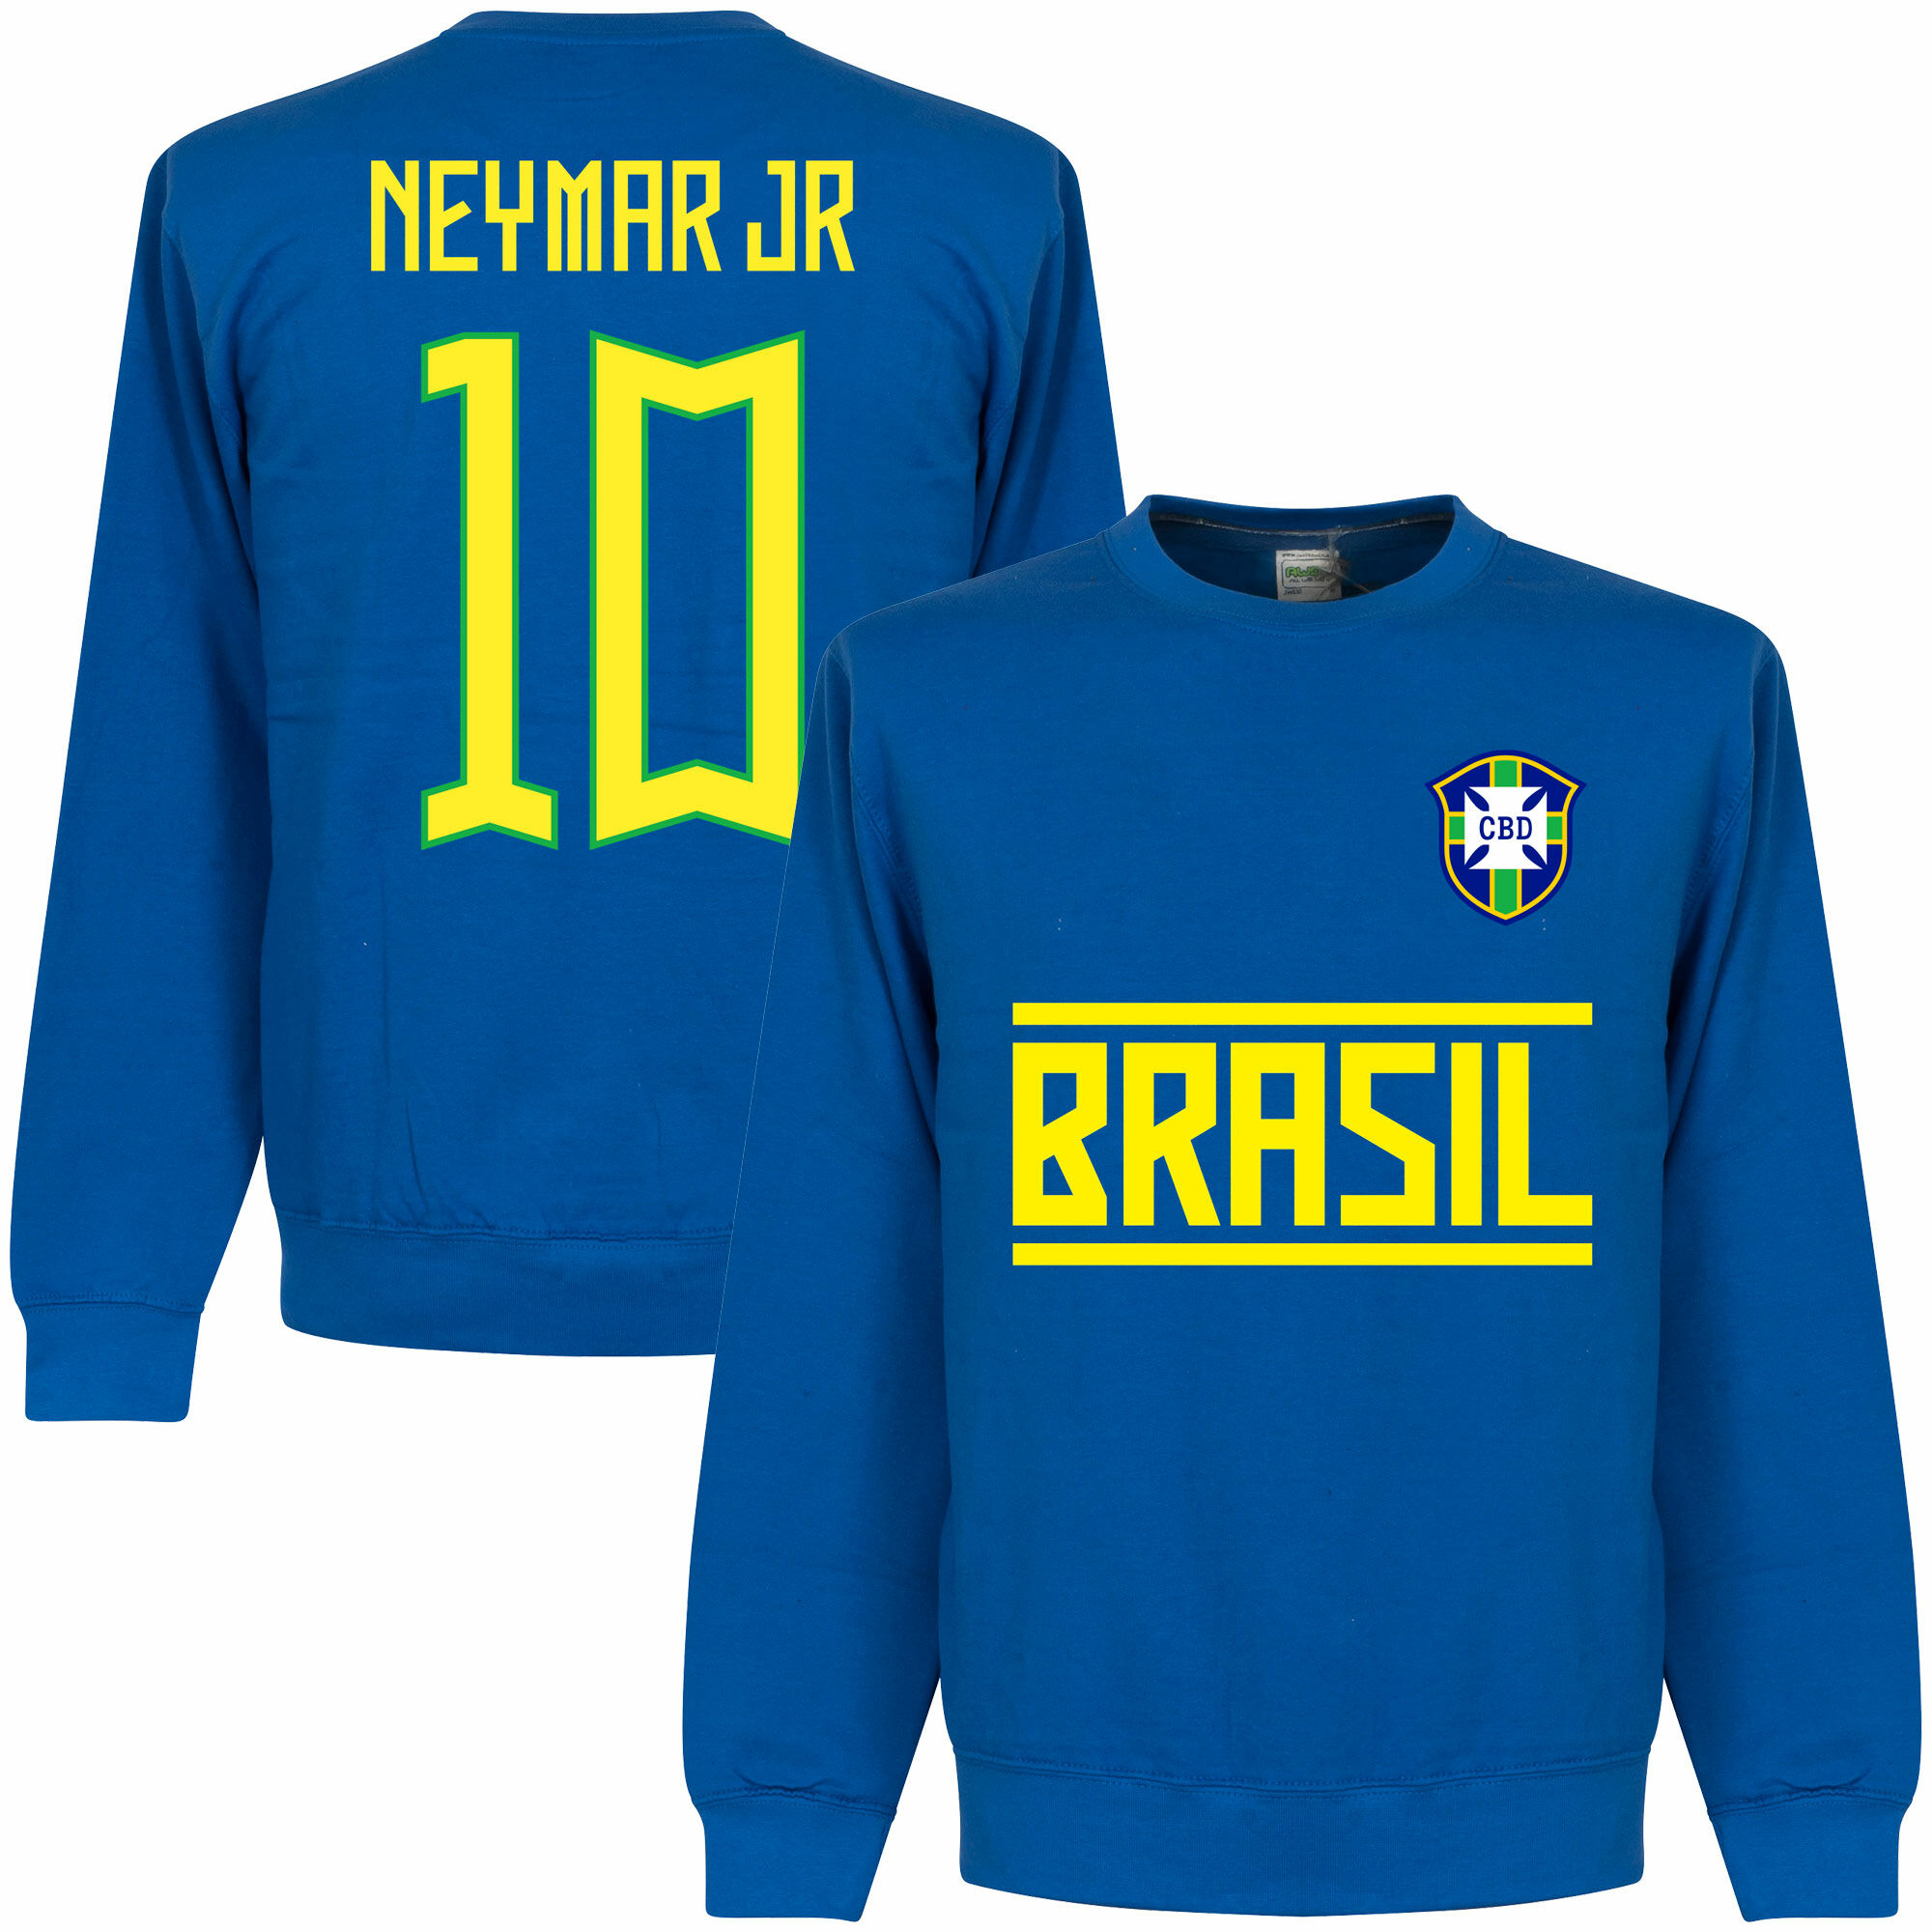 Brazílie - Mikina s kapucí - modrá, číslo 10, Neymar